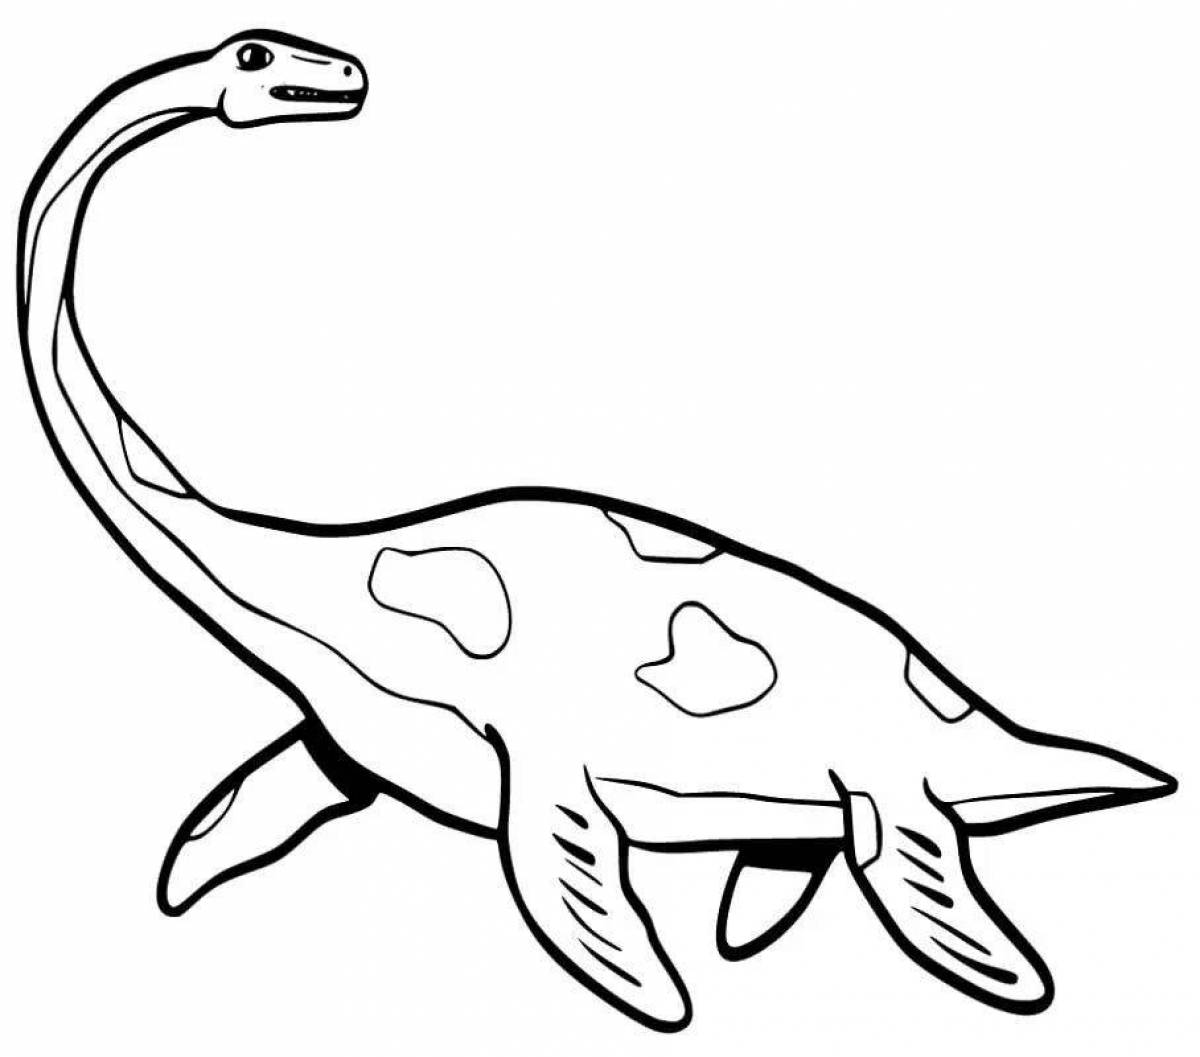 Фото Подробная раскраска плезиозавра